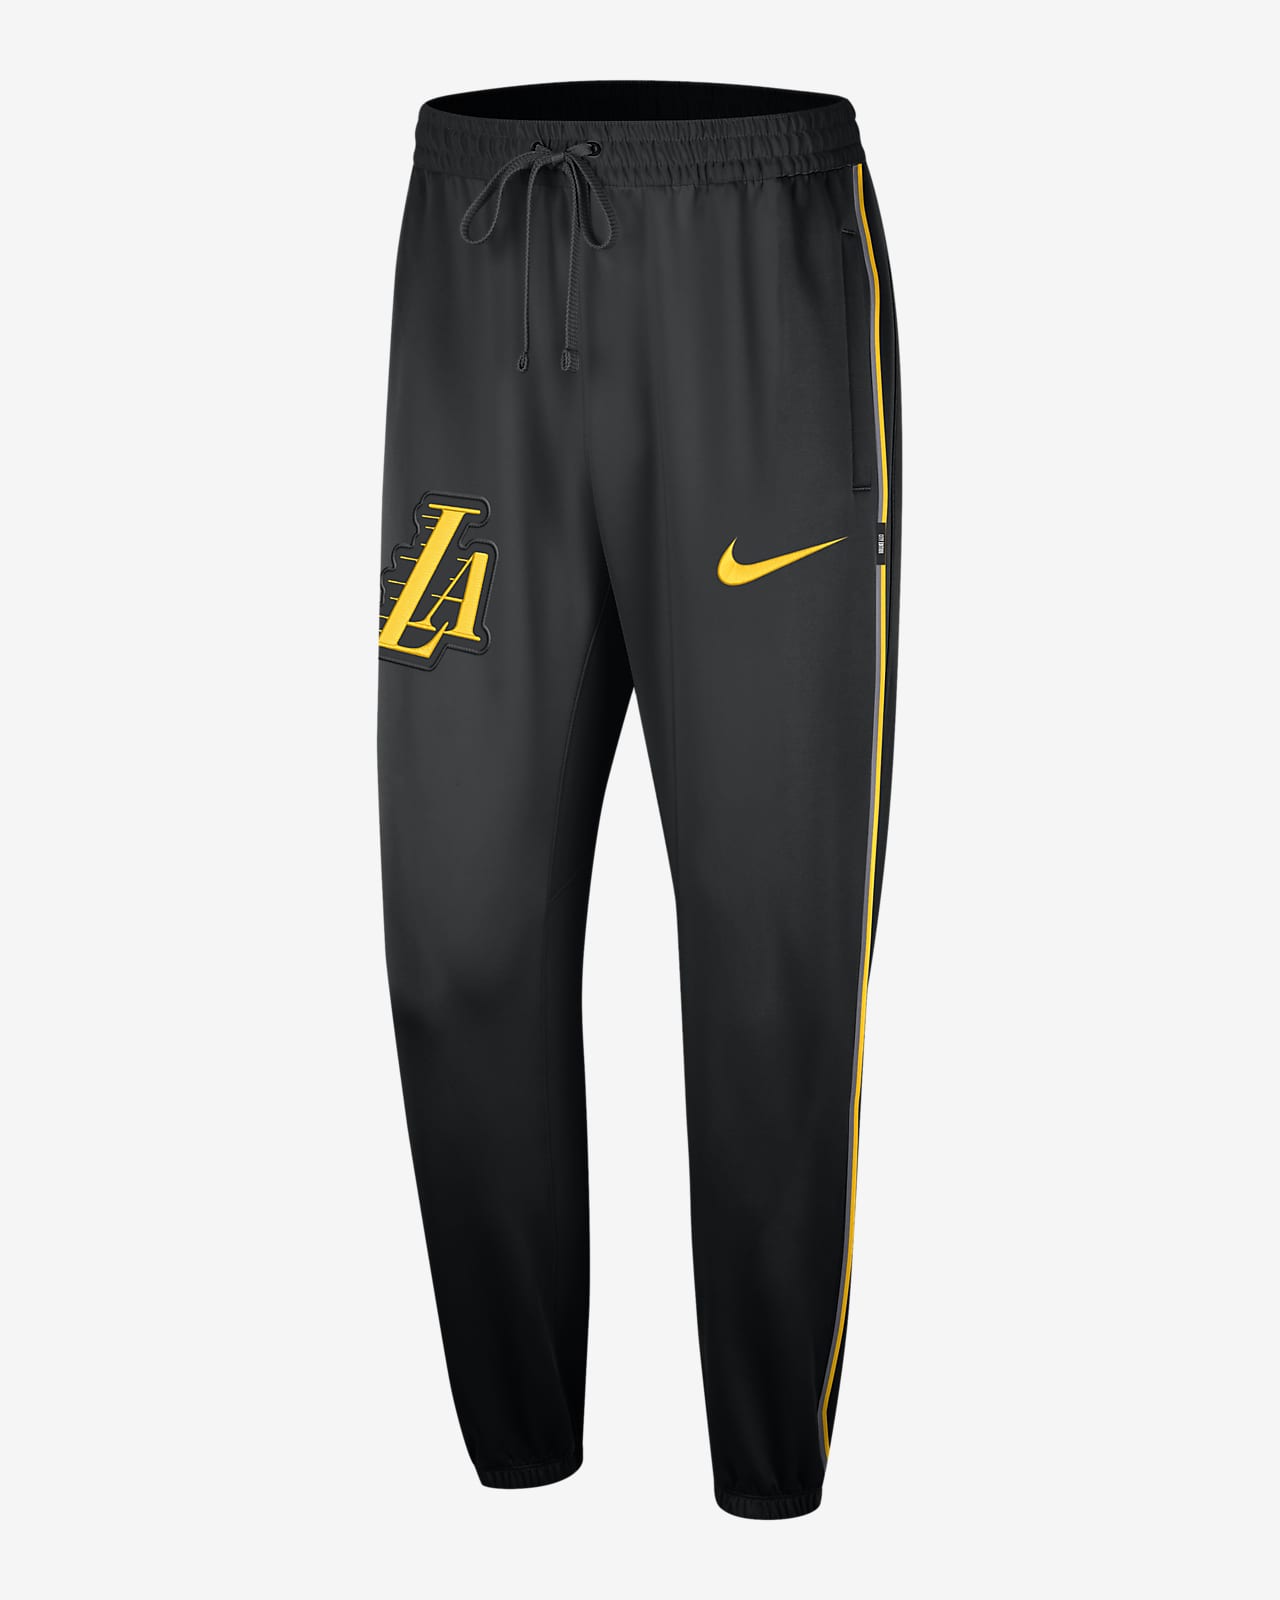 Nike LA Lakers NBA Spotlight Warm Up Pants Men's Large